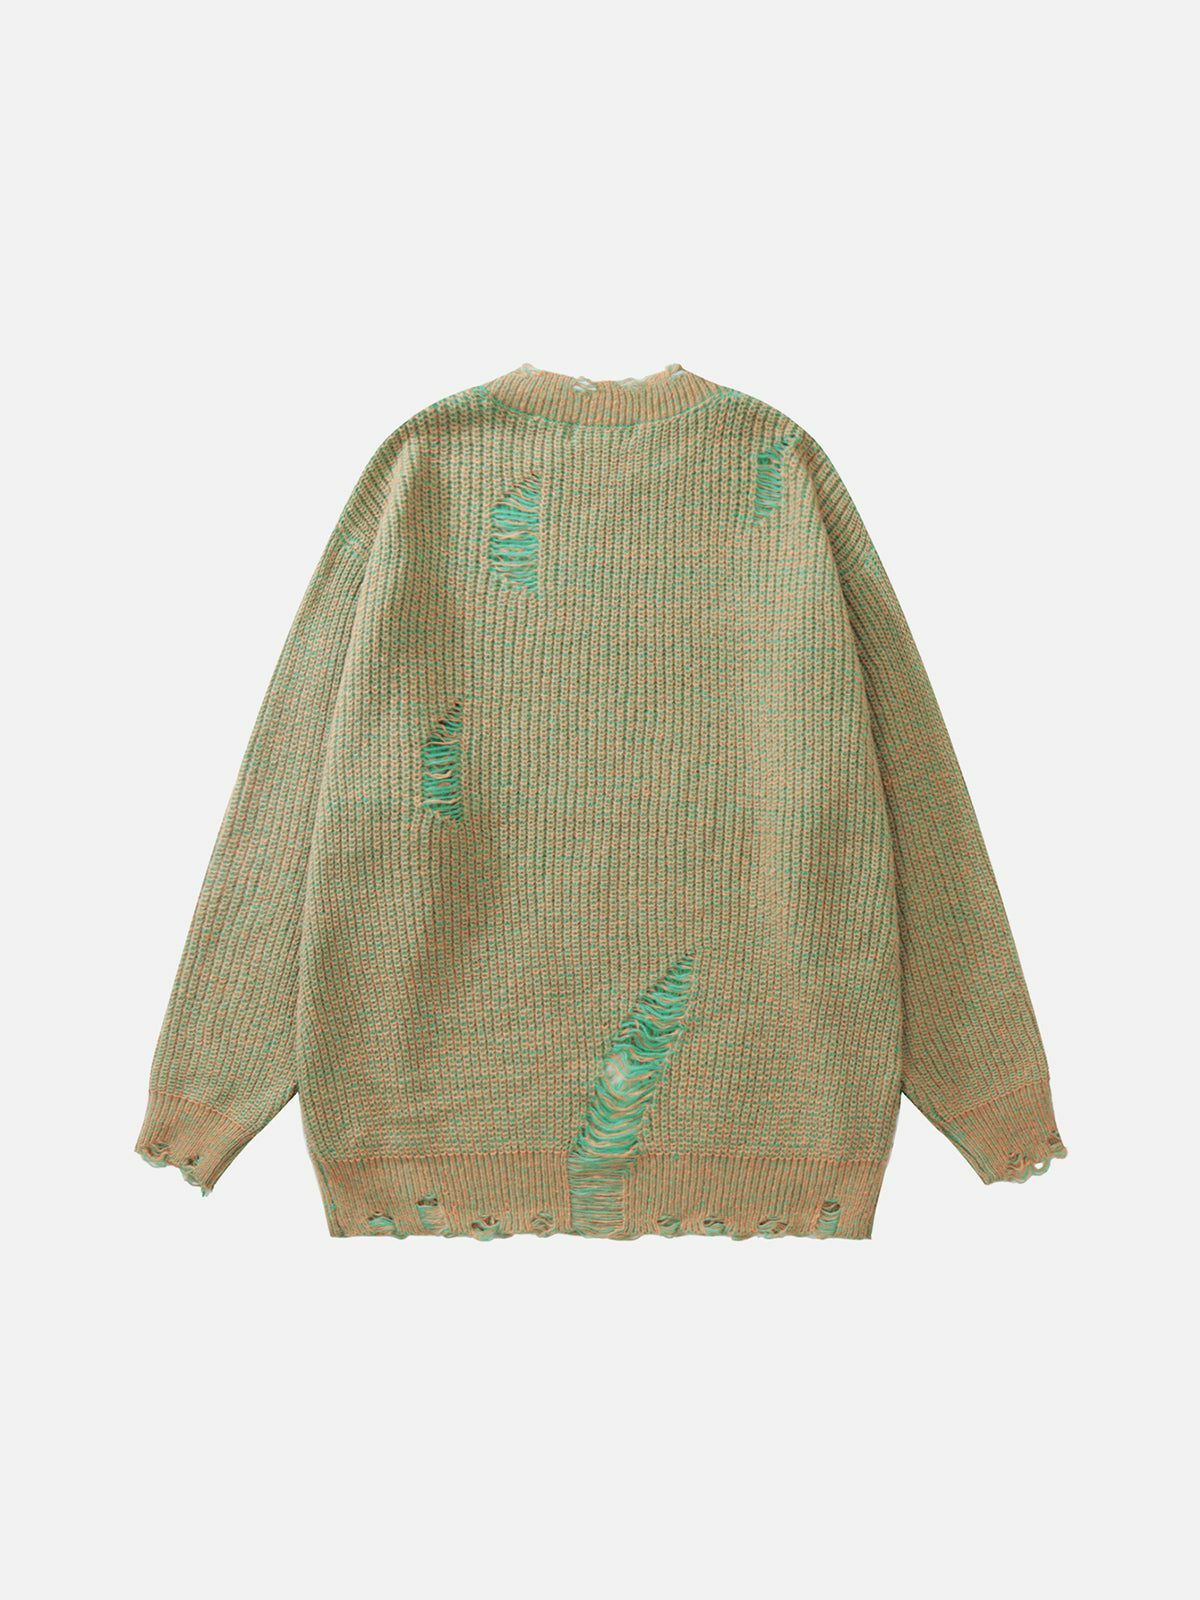 retro ripped knit sweater y2k fashion essential 6504